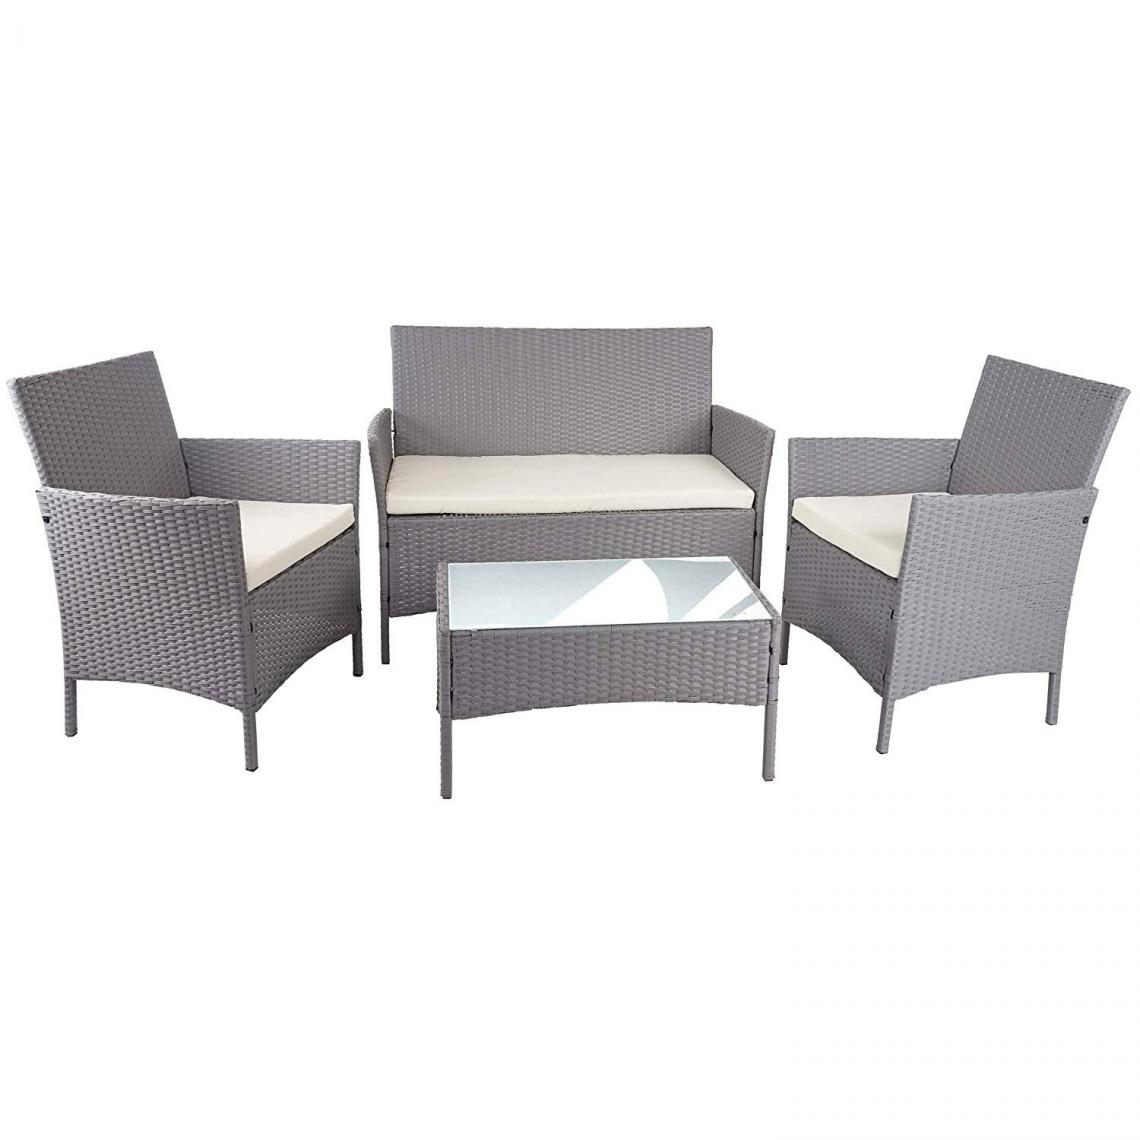 Decoshop26 - Salon de jardin avec fauteuils banc et table en poly-rotin gris et coussin crème MDJ04148 - Ensembles canapés et fauteuils